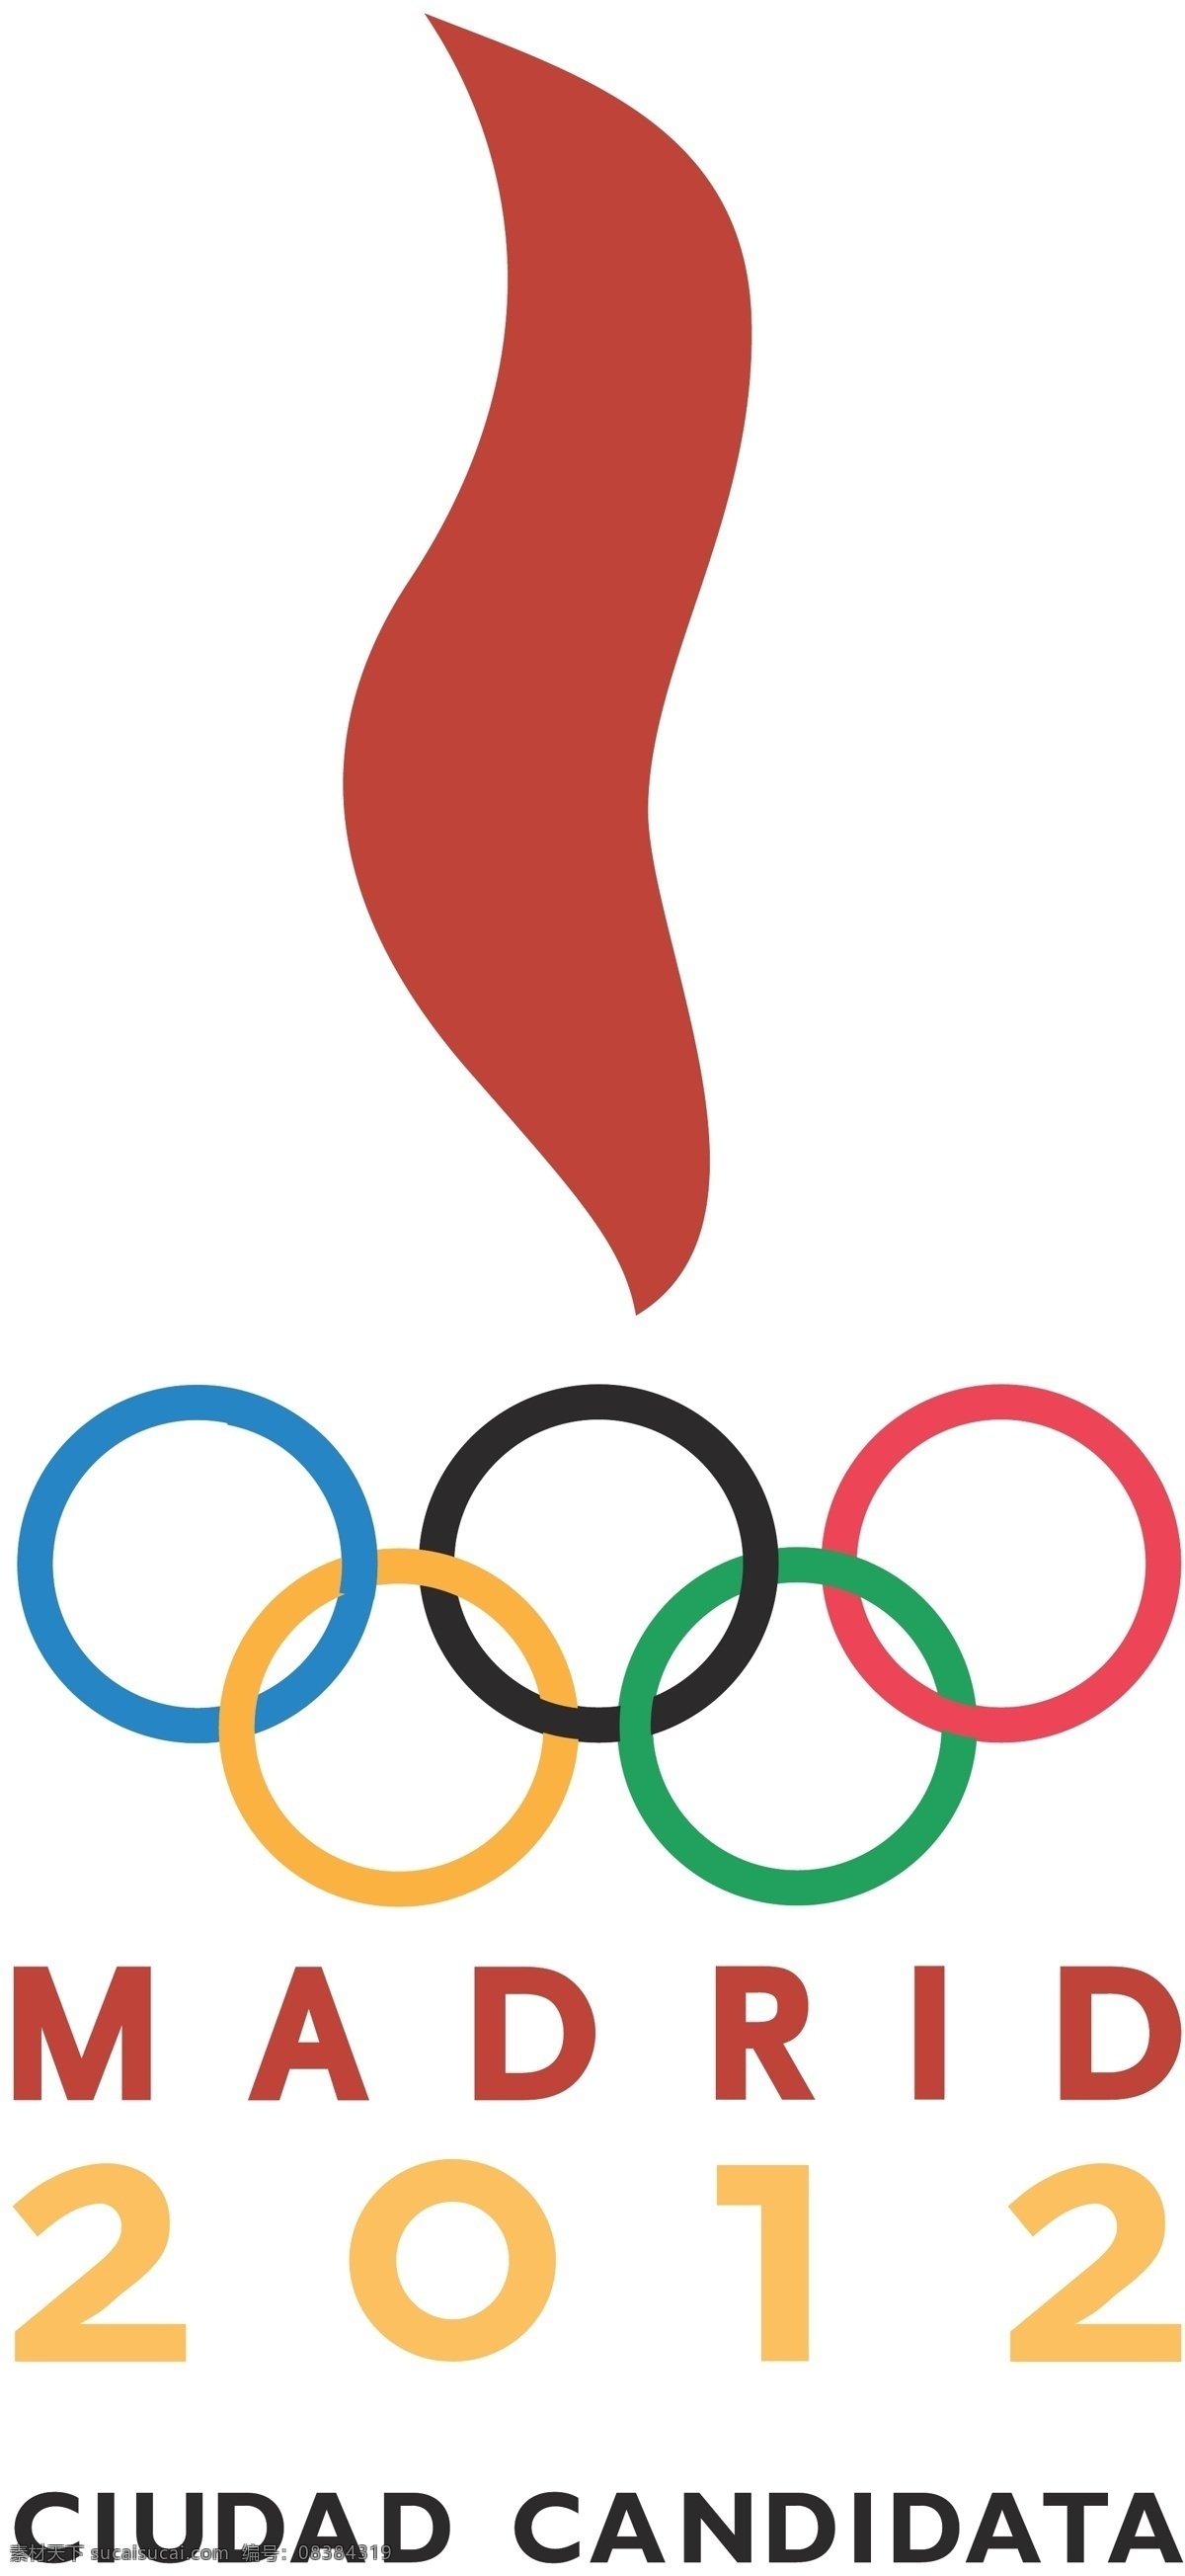 2012 马德里 申奥 会徽 奥运 申奥会徽集锦 公共标识标志 标识标志图标 矢量